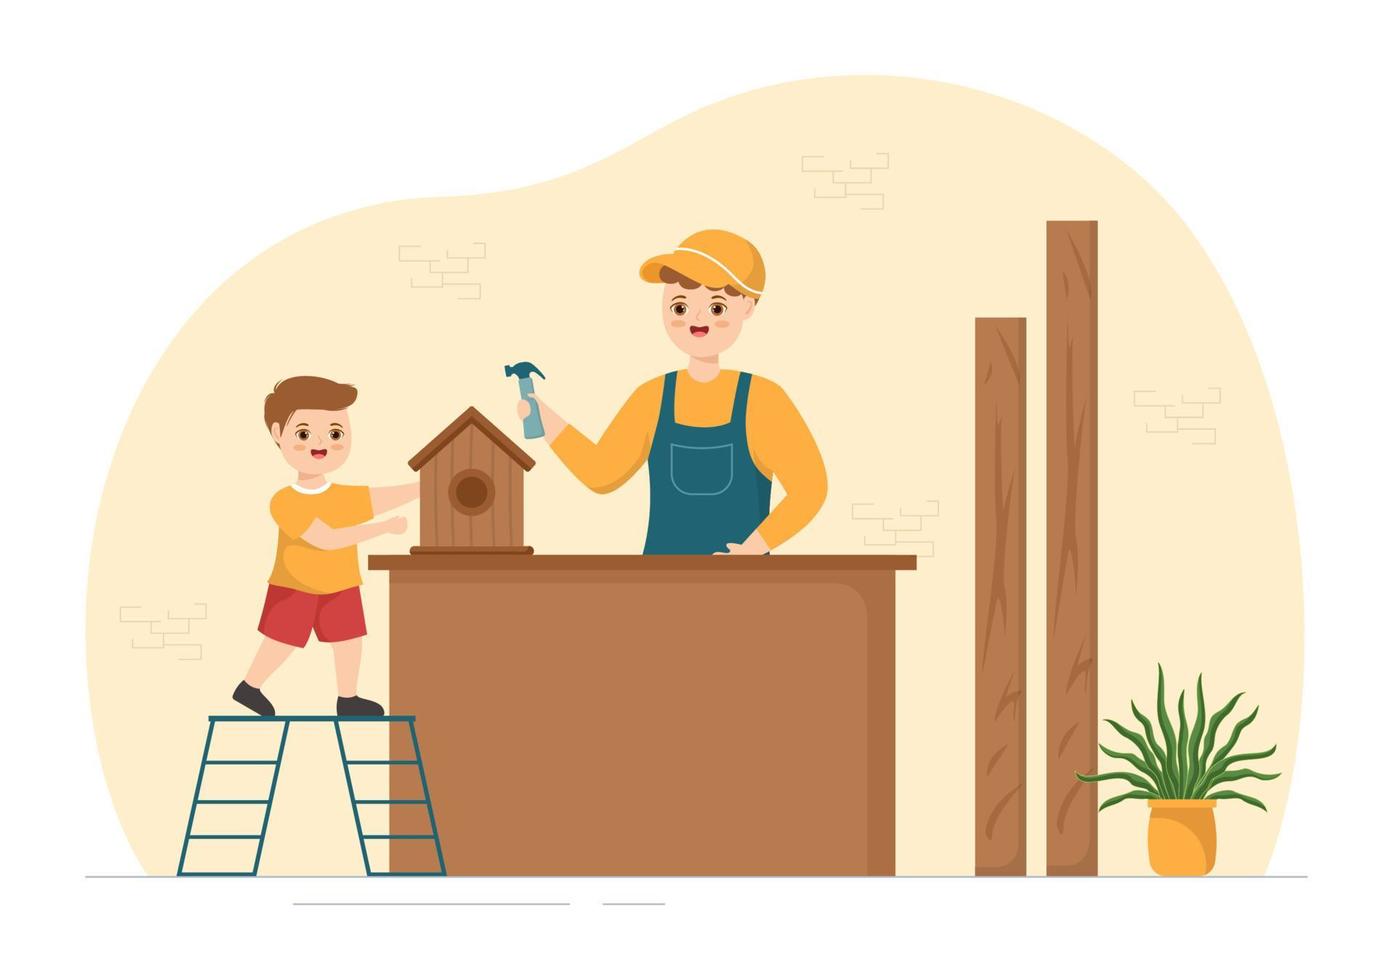 carpintería con corte de madera por artesanos y trabajadores de niños modernos que usan herramientas en una ilustración de plantilla dibujada a mano de dibujos animados planos vector